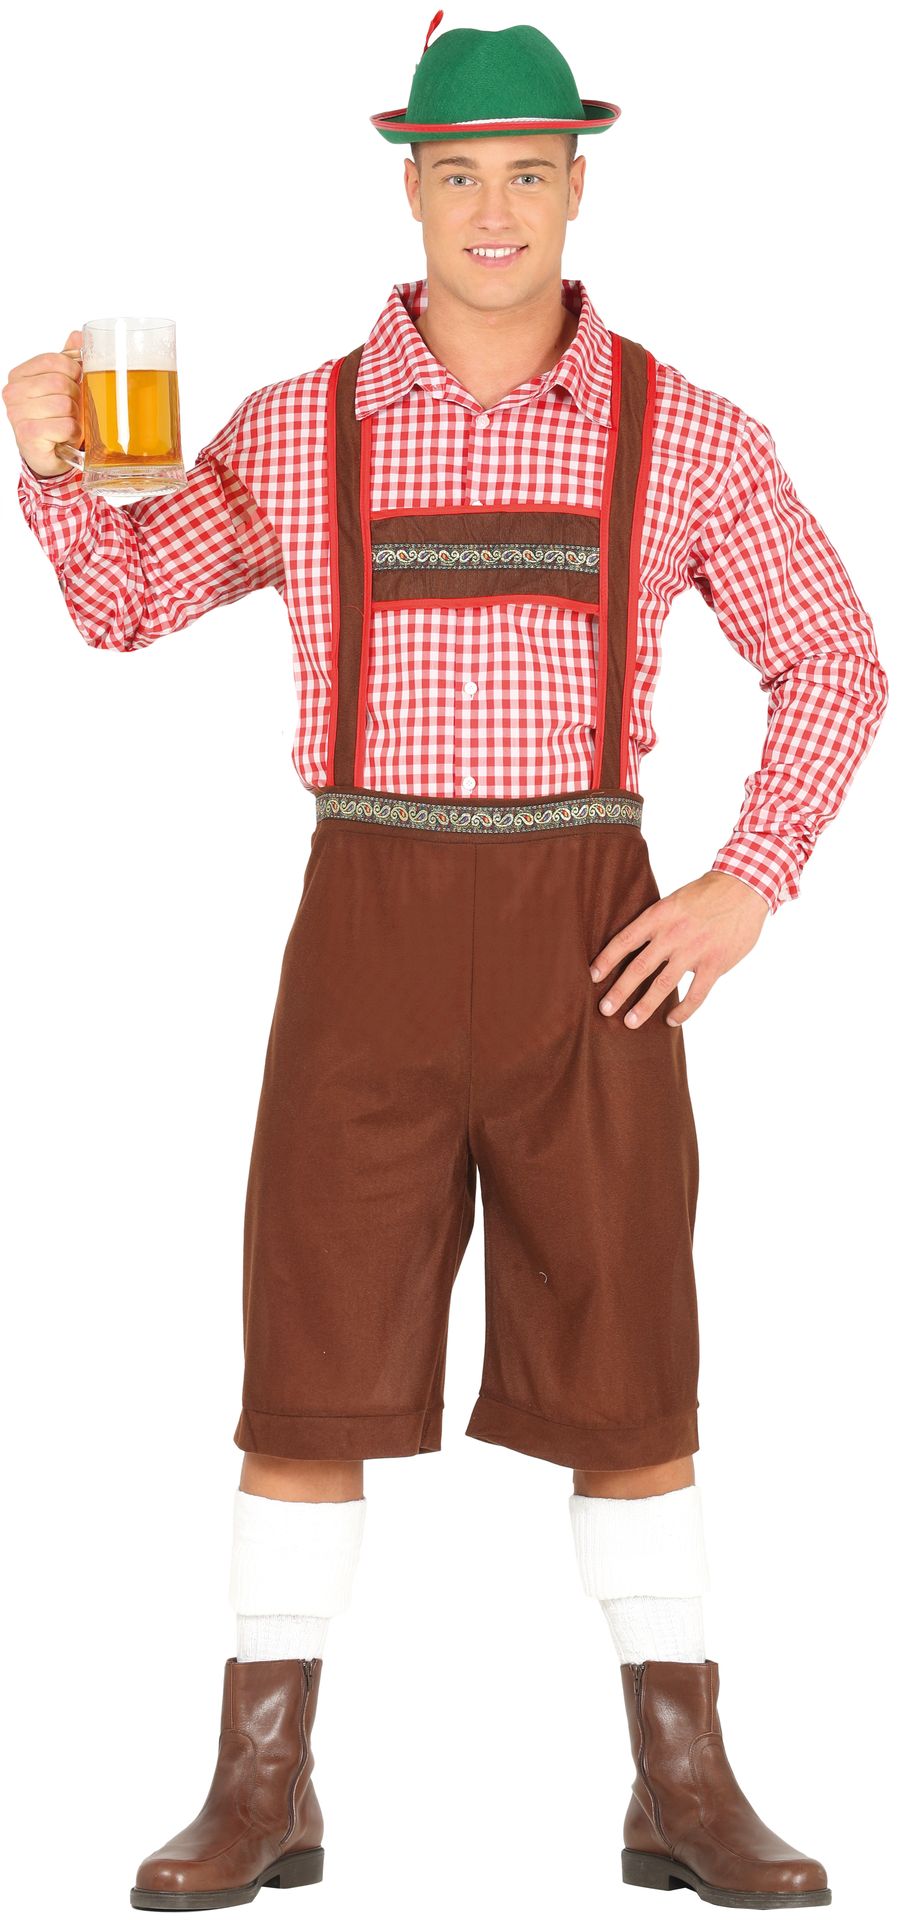 Oktoberfest lederhosen outfit